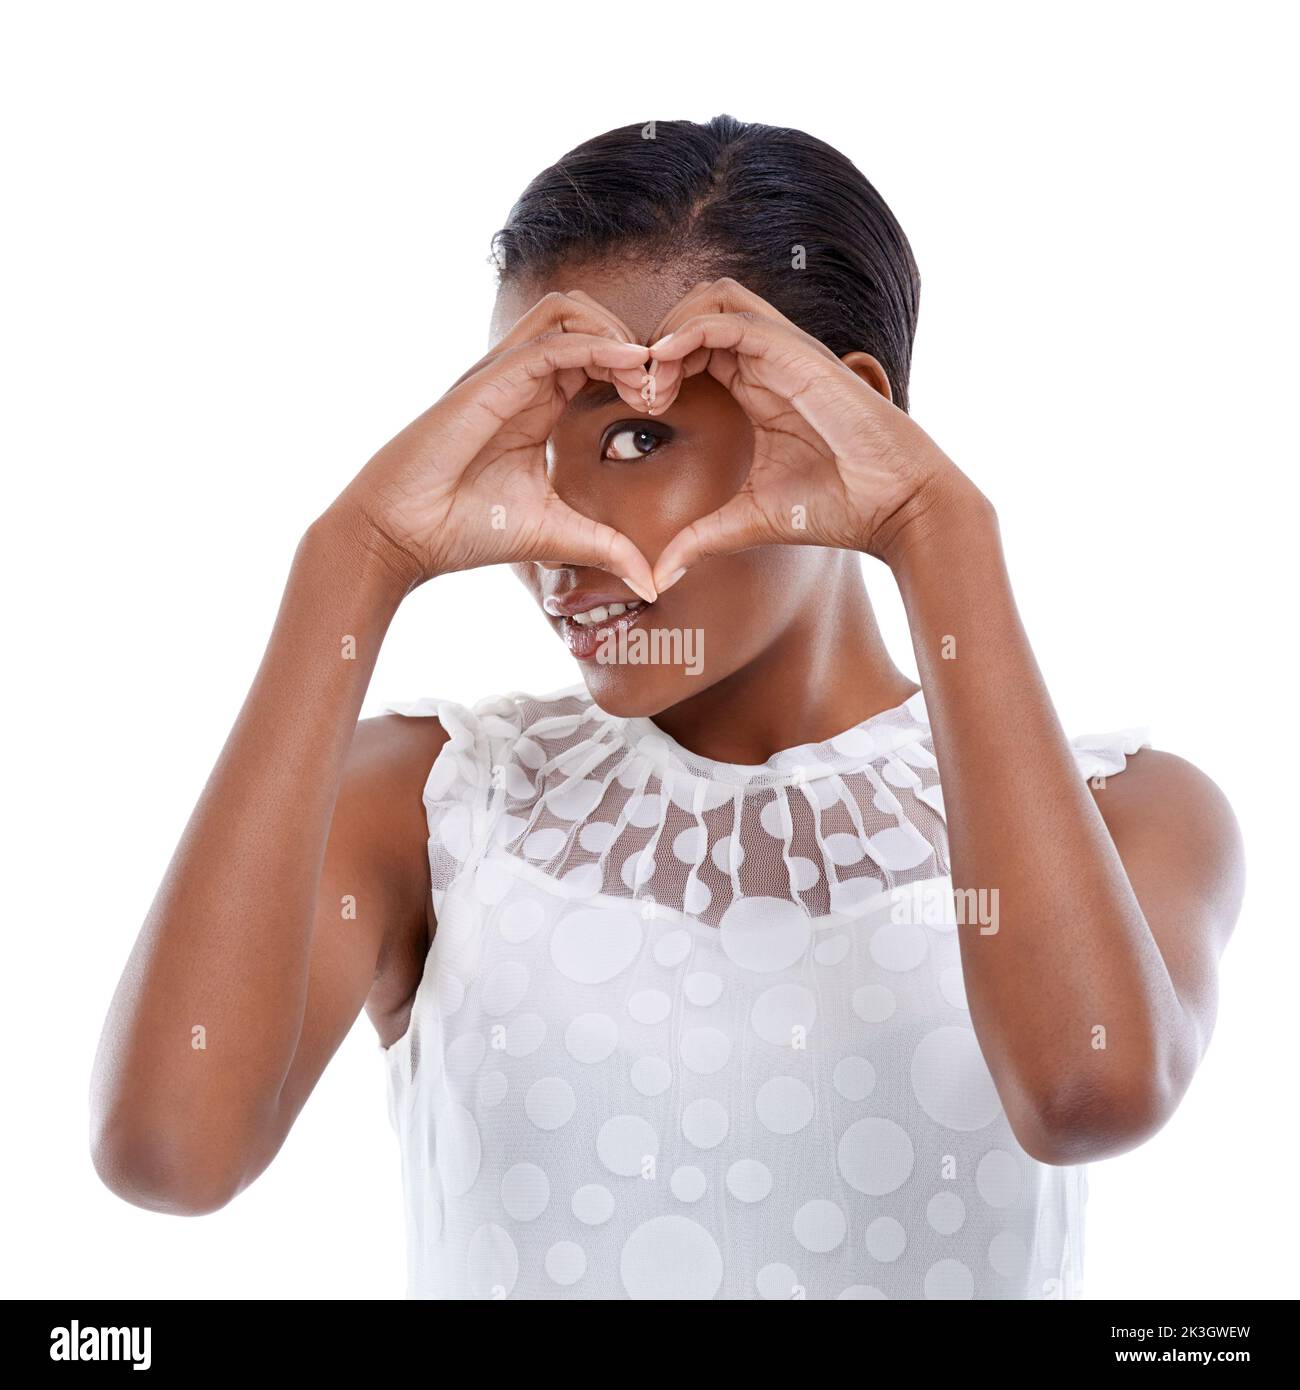 Je crois en une chose appelée l'amour. Une jeune femme faisant un geste de coeur contre un fond blanc. Banque D'Images